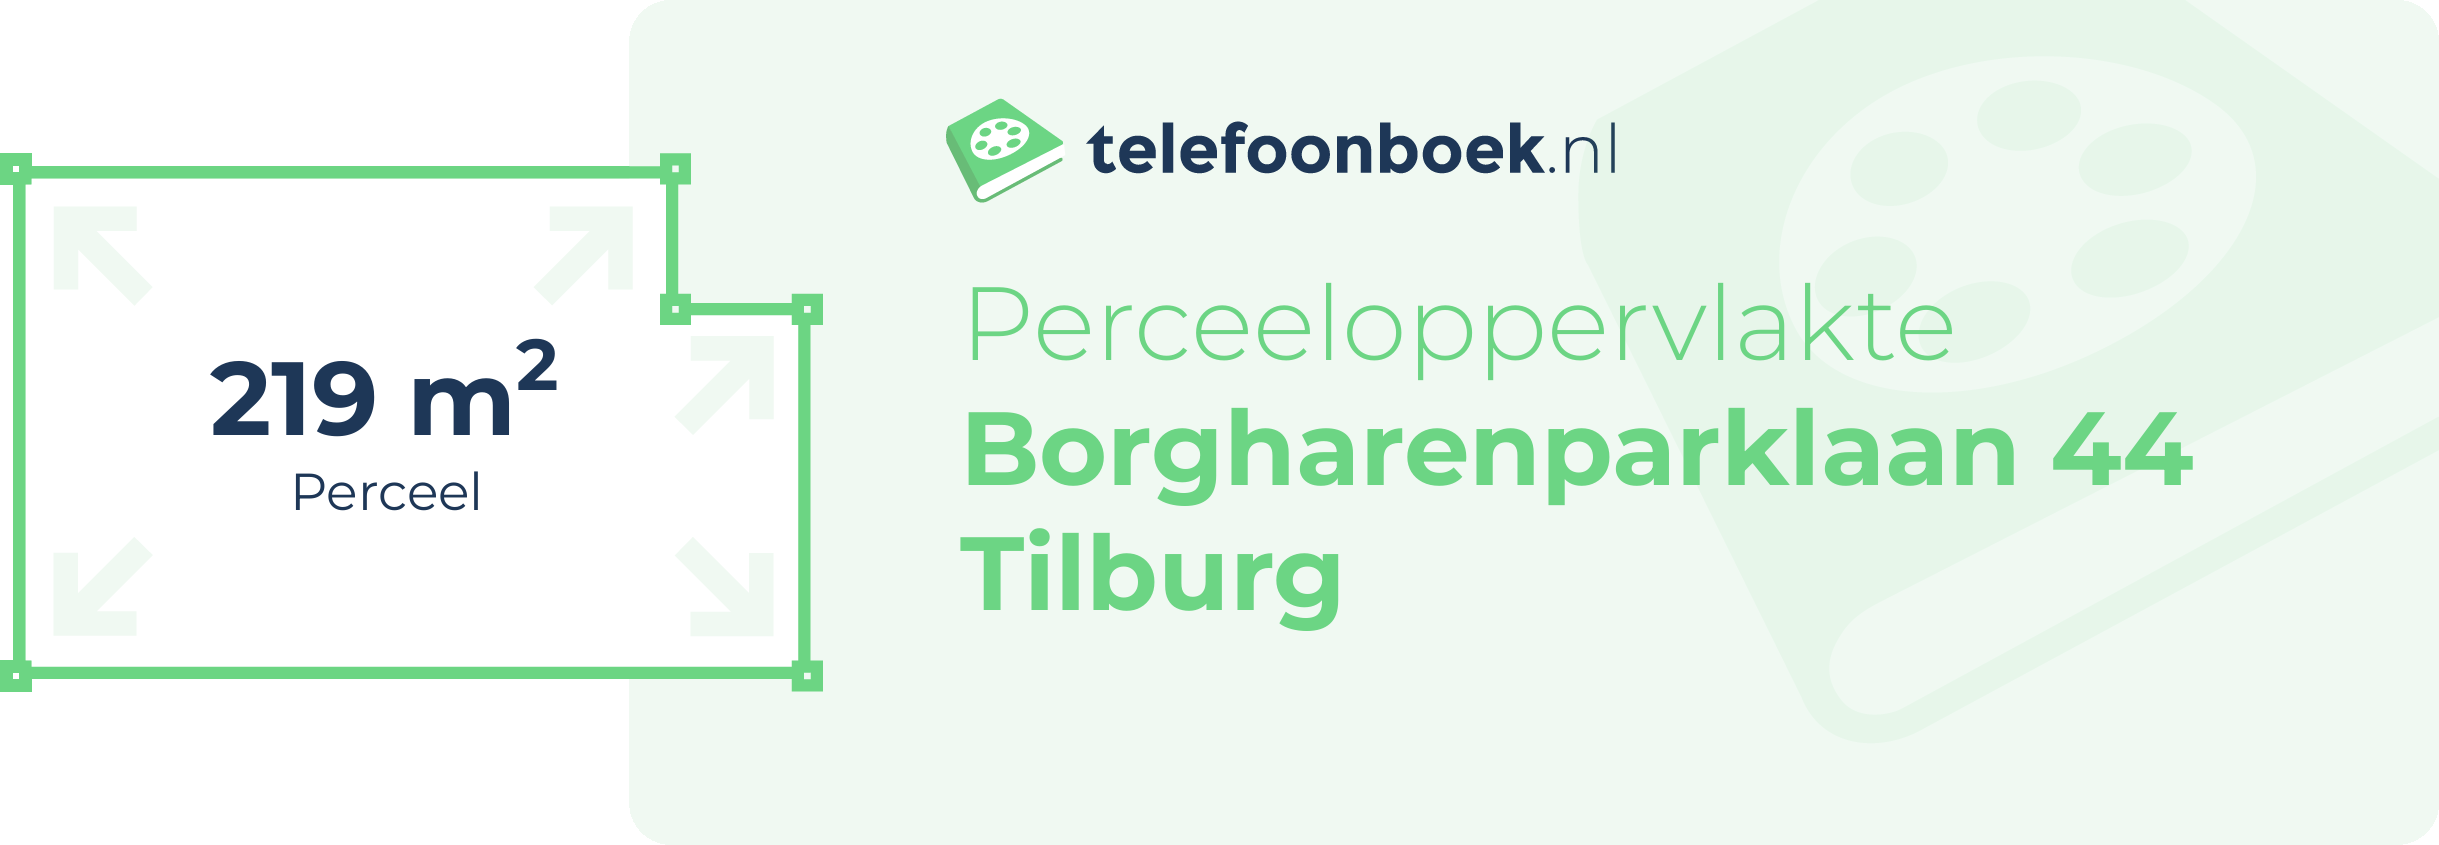 Perceeloppervlakte Borgharenparklaan 44 Tilburg